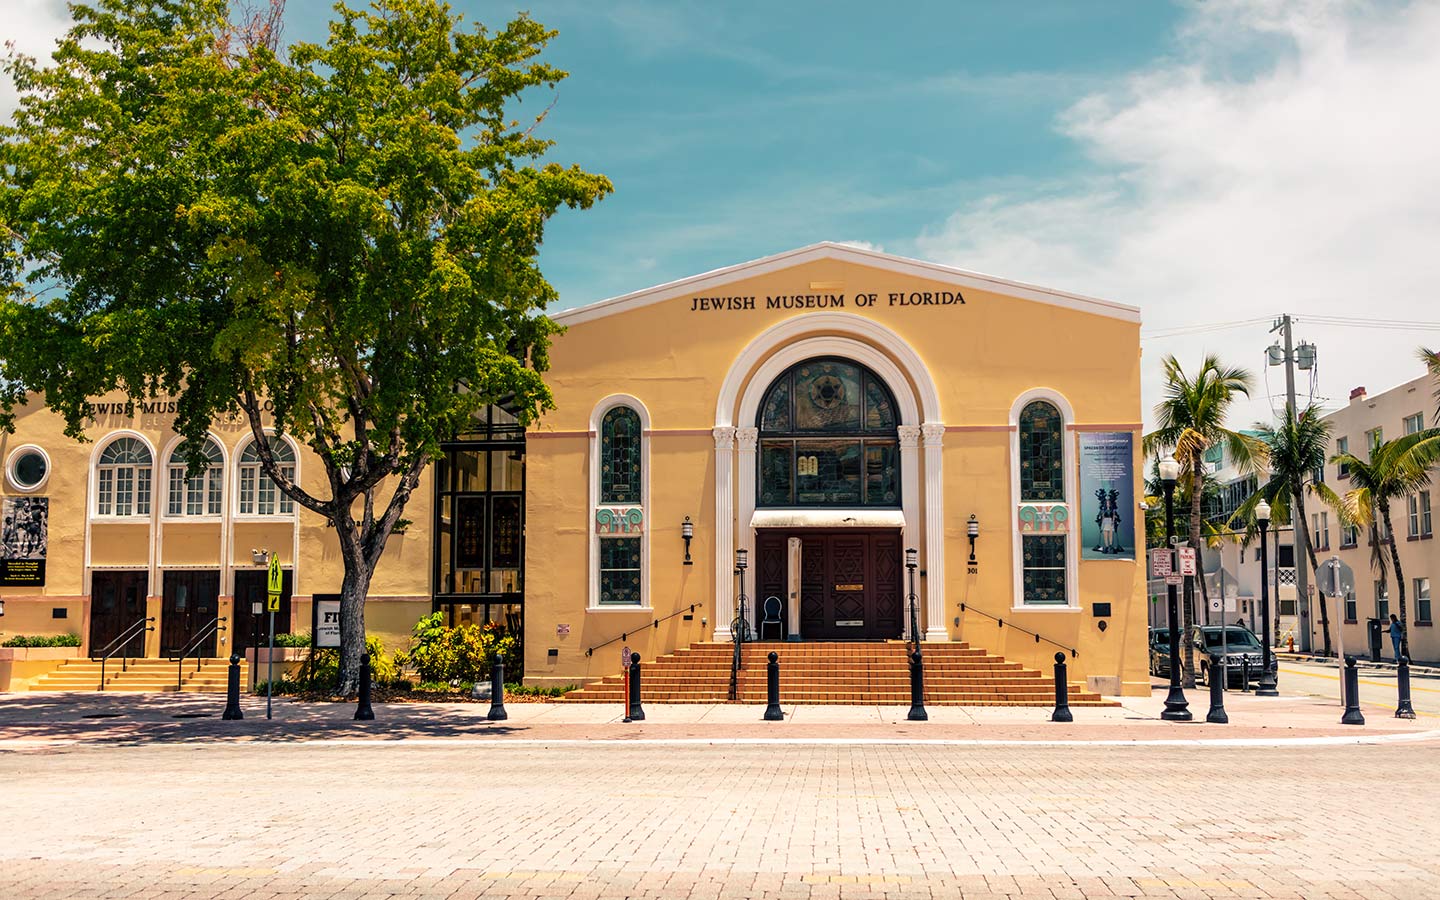 The Jewish Museum of Florida-FIU